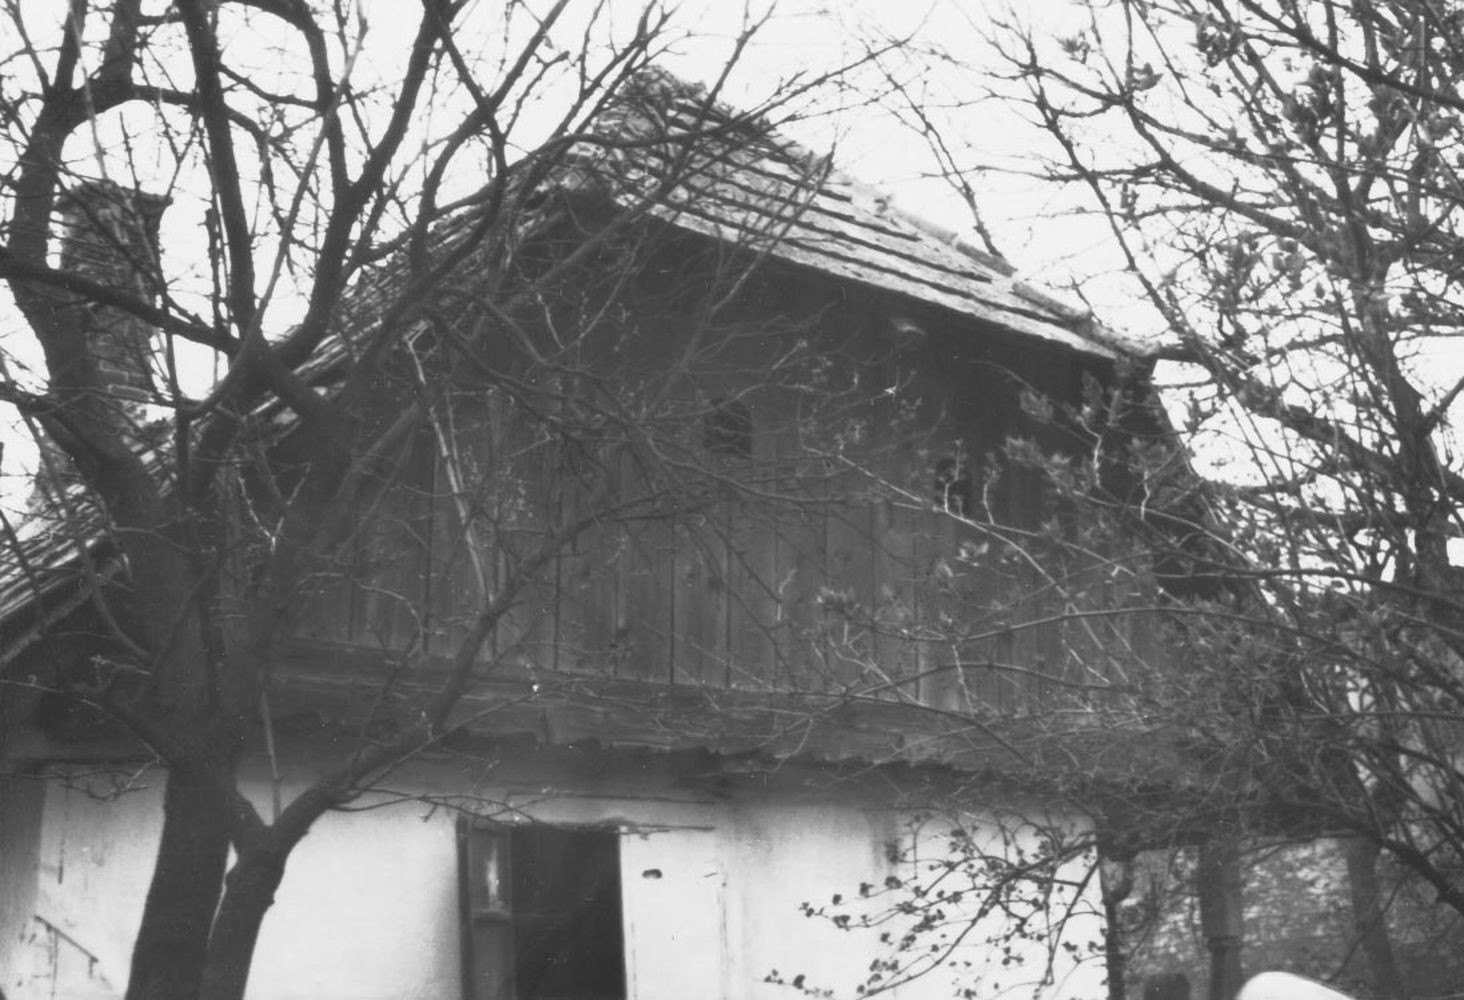 Lakóház oromfala, nézet ÉNY-ról. Inke, Vörösmarty u.5. (Rippl-Rónai Múzeum CC BY-NC-ND)